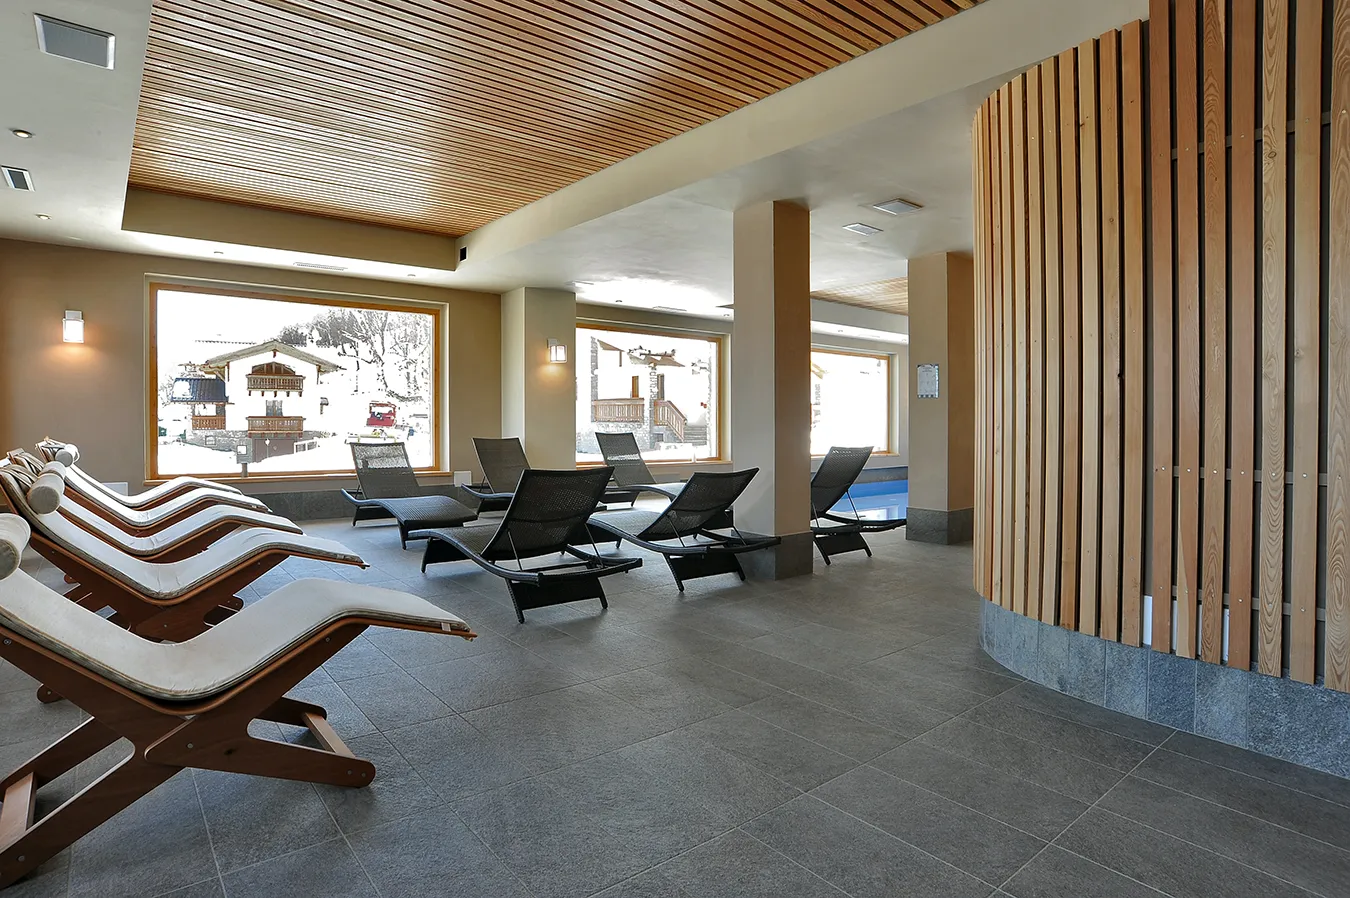 SPA im Hotel Sporting Prodongo mit eleganten Fliesen, modernen Liegestühlen und großen Fenstern.